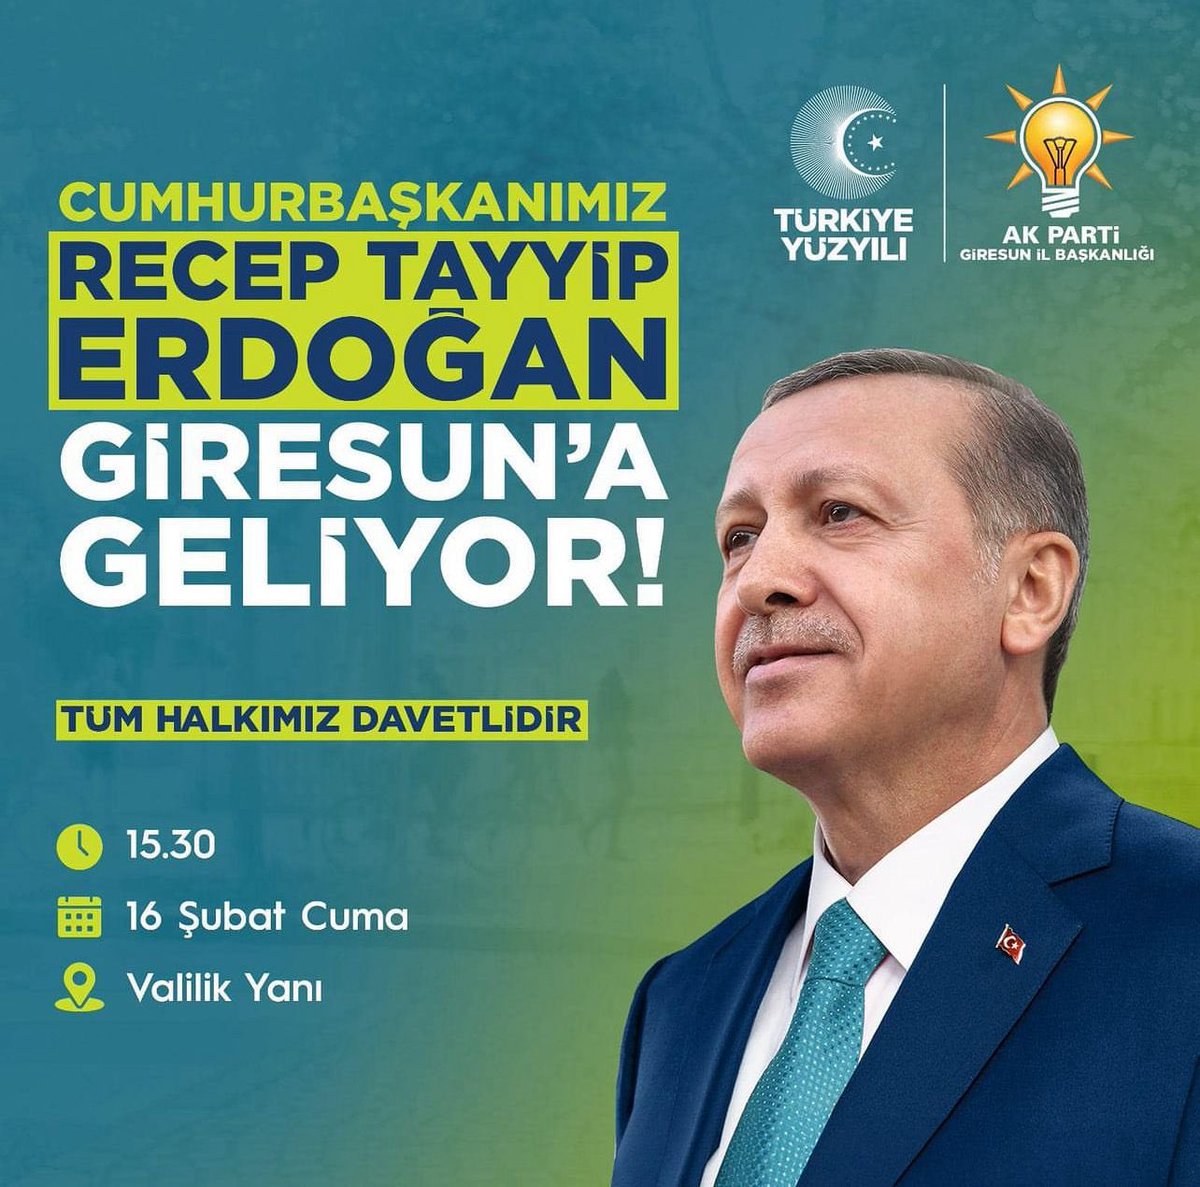 Heyecanlıyız ve gururluyuz. Cumhurbaşkanımız ve Genel Başkanımız Sayın Recep Tayyip Erdoğan, fındığın başkenti Giresun’umuza geliyor. Türkiye Yüzyılı hedeflerimiz doğrultusunda “Gerçek Belediyecilik AK Belediyecilik” demek için tüm hemşehrilerimin katılımlarını bekliyorum.